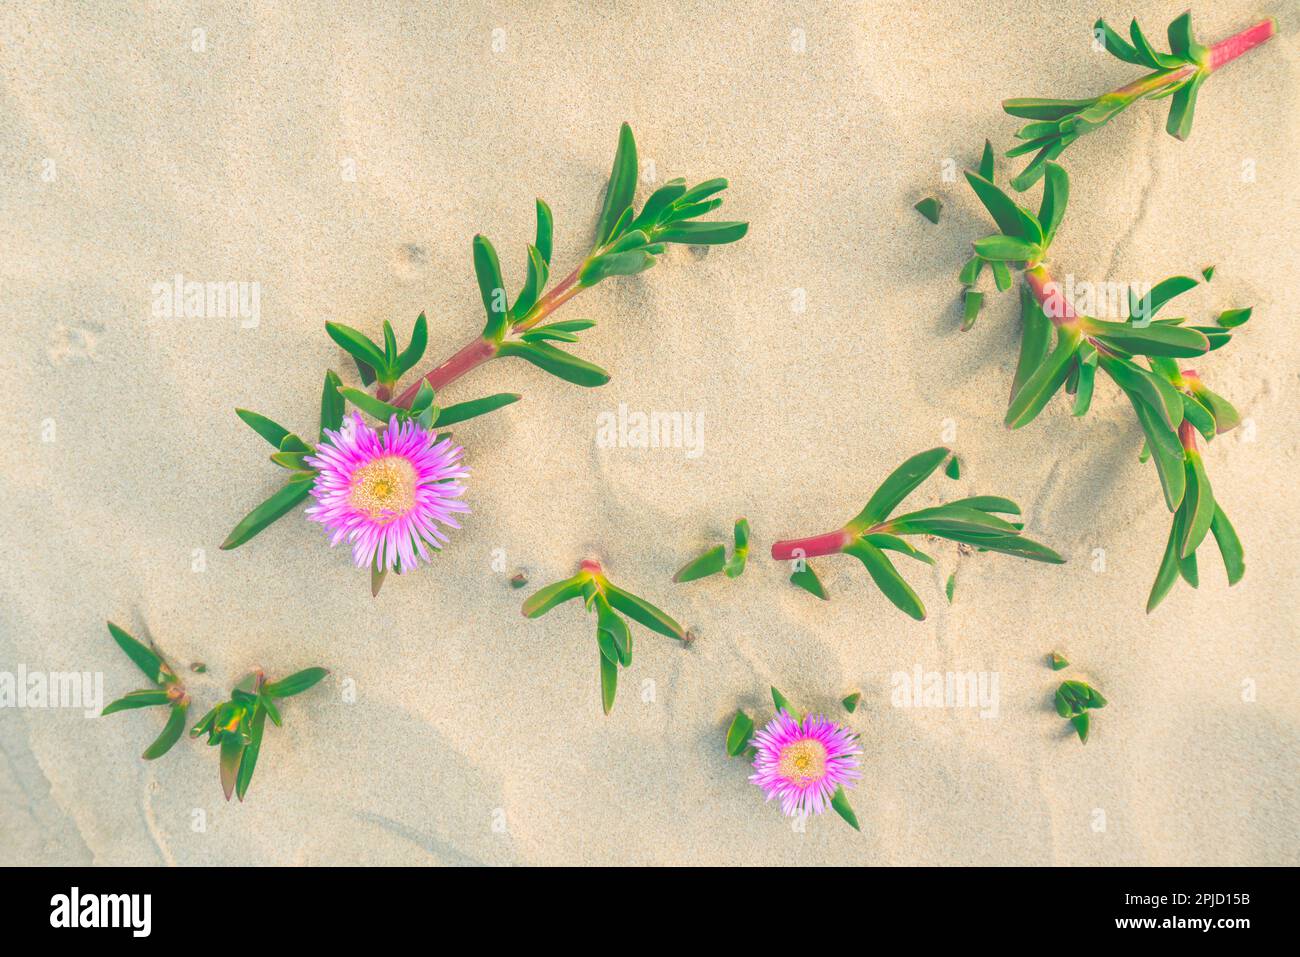 Am Strand blühende Segefeisblumen oder Eispflanzen. Sanddünen und einheimische Pflanzen, kalifornische Küstenlandschaft Stockfoto